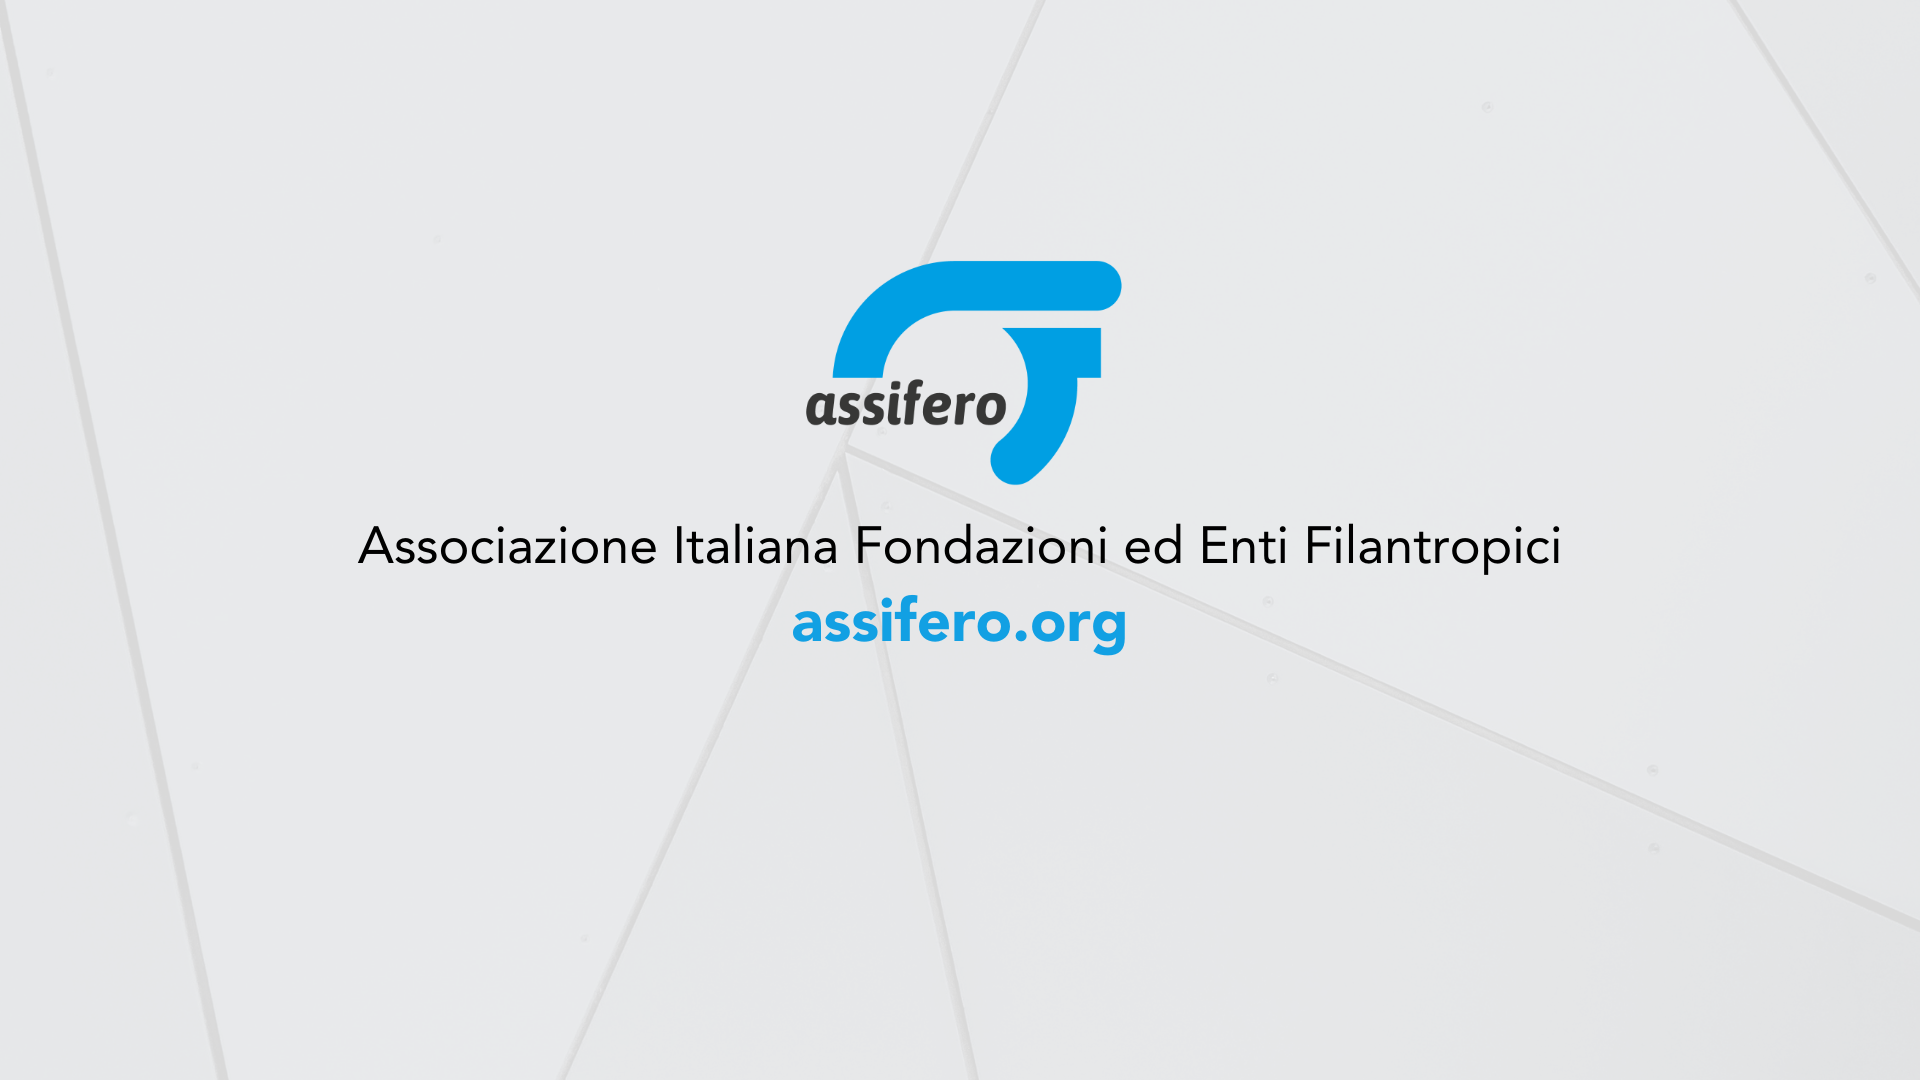 (c) Assifero.org